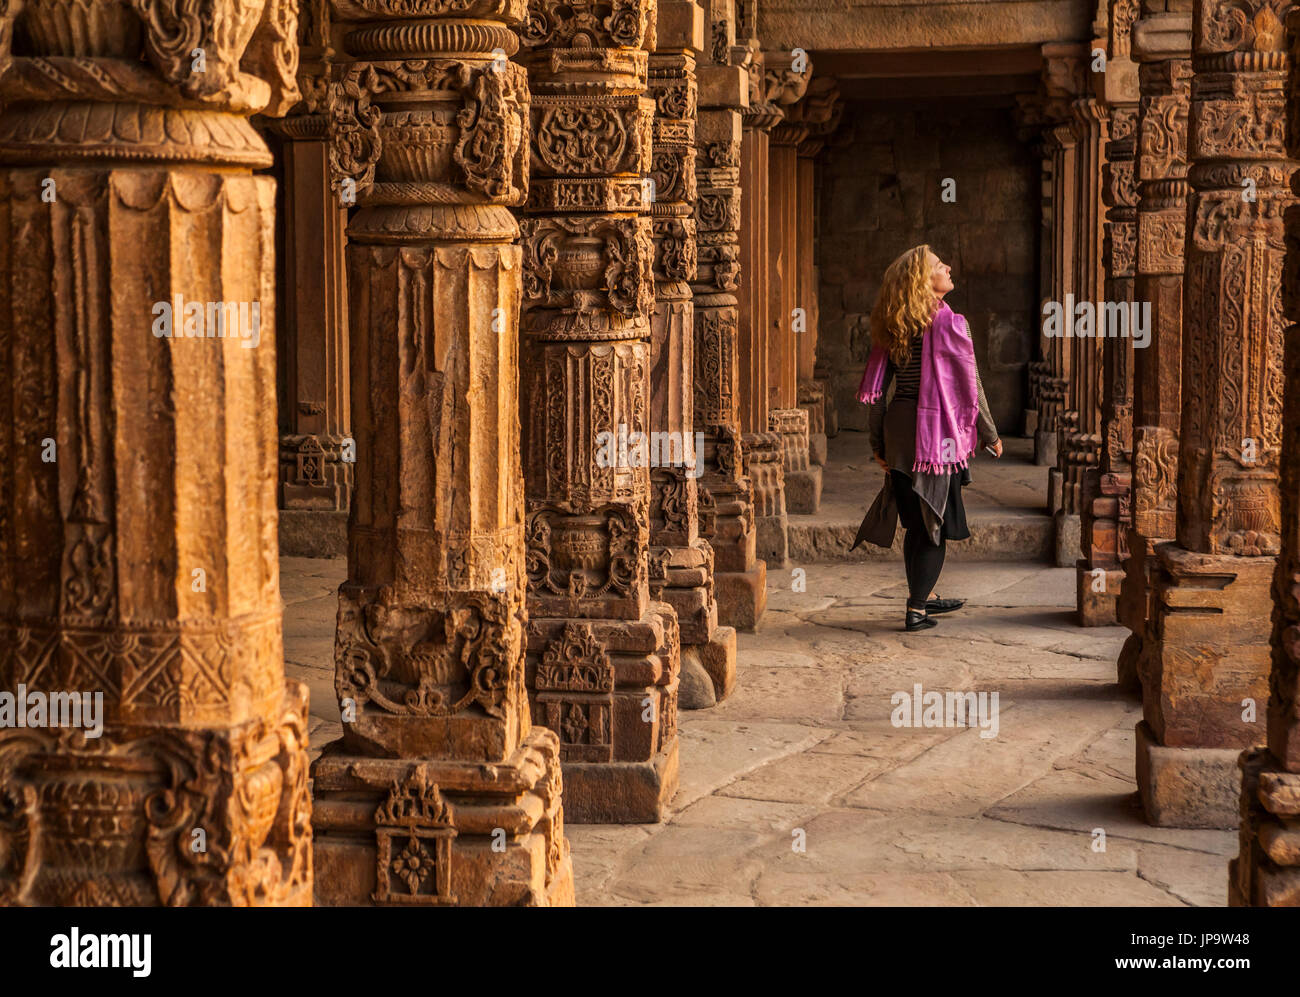 A line of ornate stone columns in the Qutb Complex, Delhi, India. Stock Photo